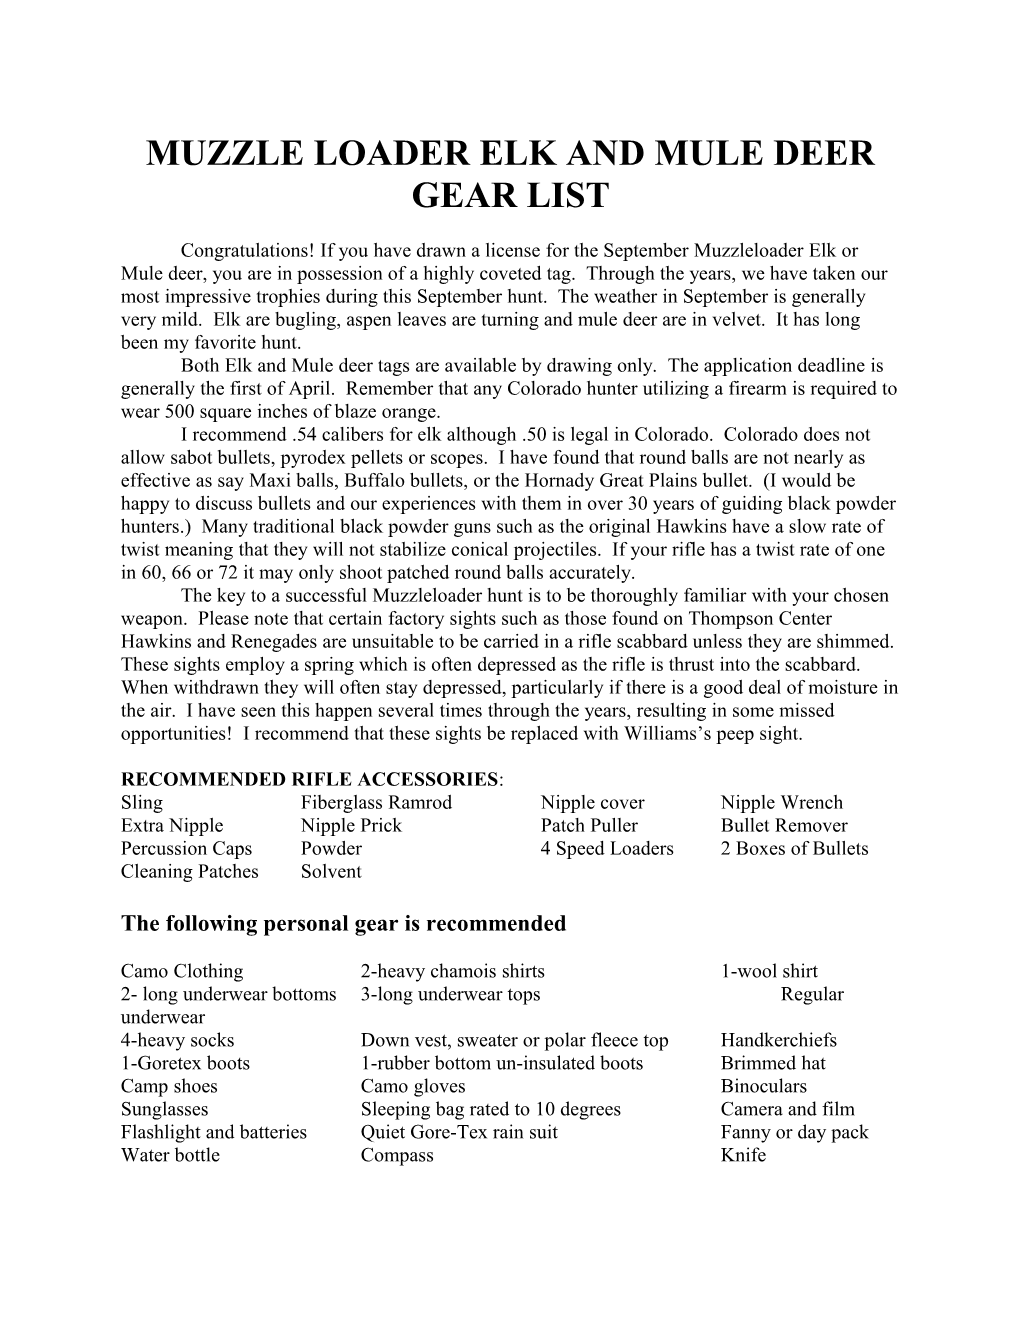 Muzzle Loader Elk and Mule Deer Gear List